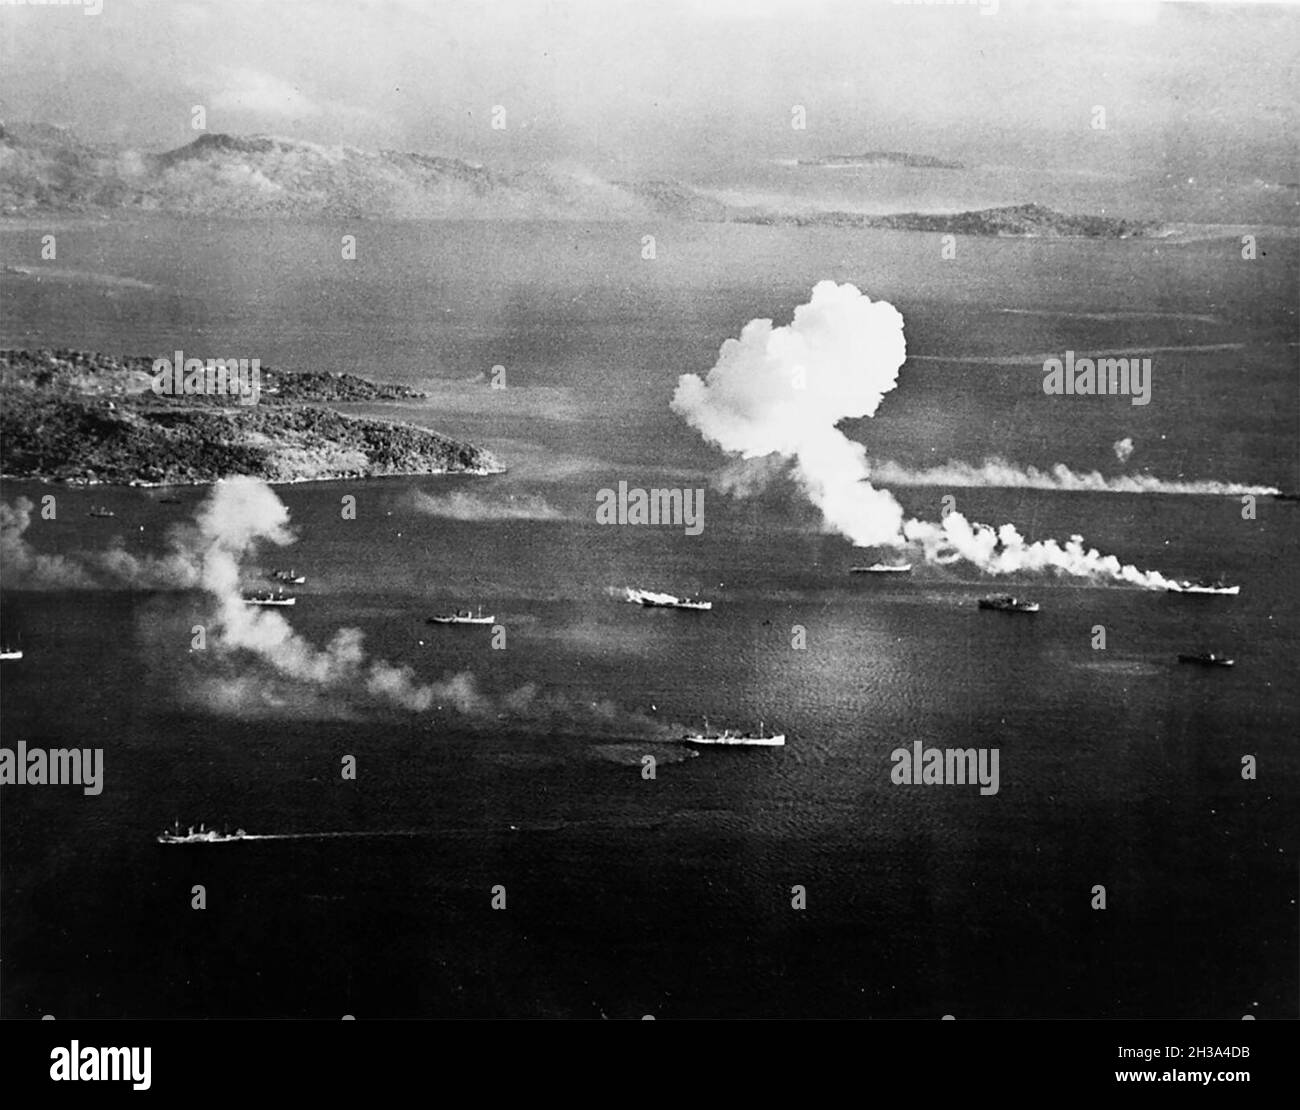 Expédition japonaise sous attaque aérienne dans le lagon de Truk, vu d'un avion USS Intrepid (CV-11) le premier jour des raids, 17 février 1944.L'île Dublon est à gauche, avec l'île Moen à l'arrière-plan.Quatre de ces navires semblent avoir été touchés à cette époque. Banque D'Images